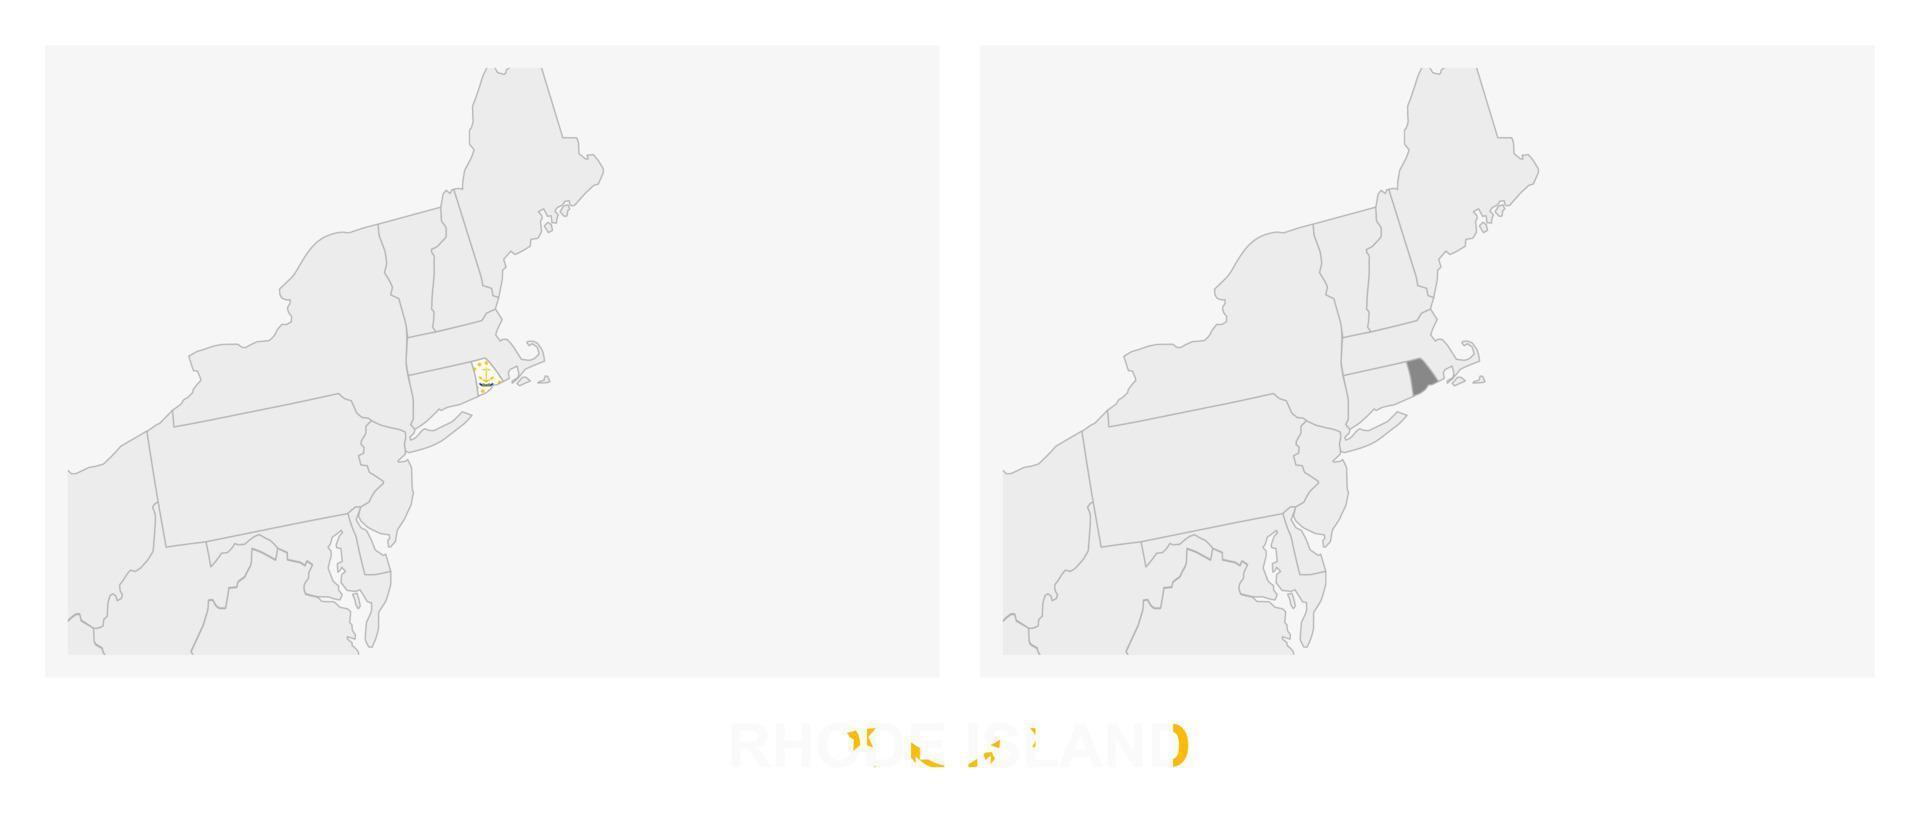 dos versiones del mapa del estado de rhode island, con la bandera de rhode island y resaltada en gris oscuro. vector